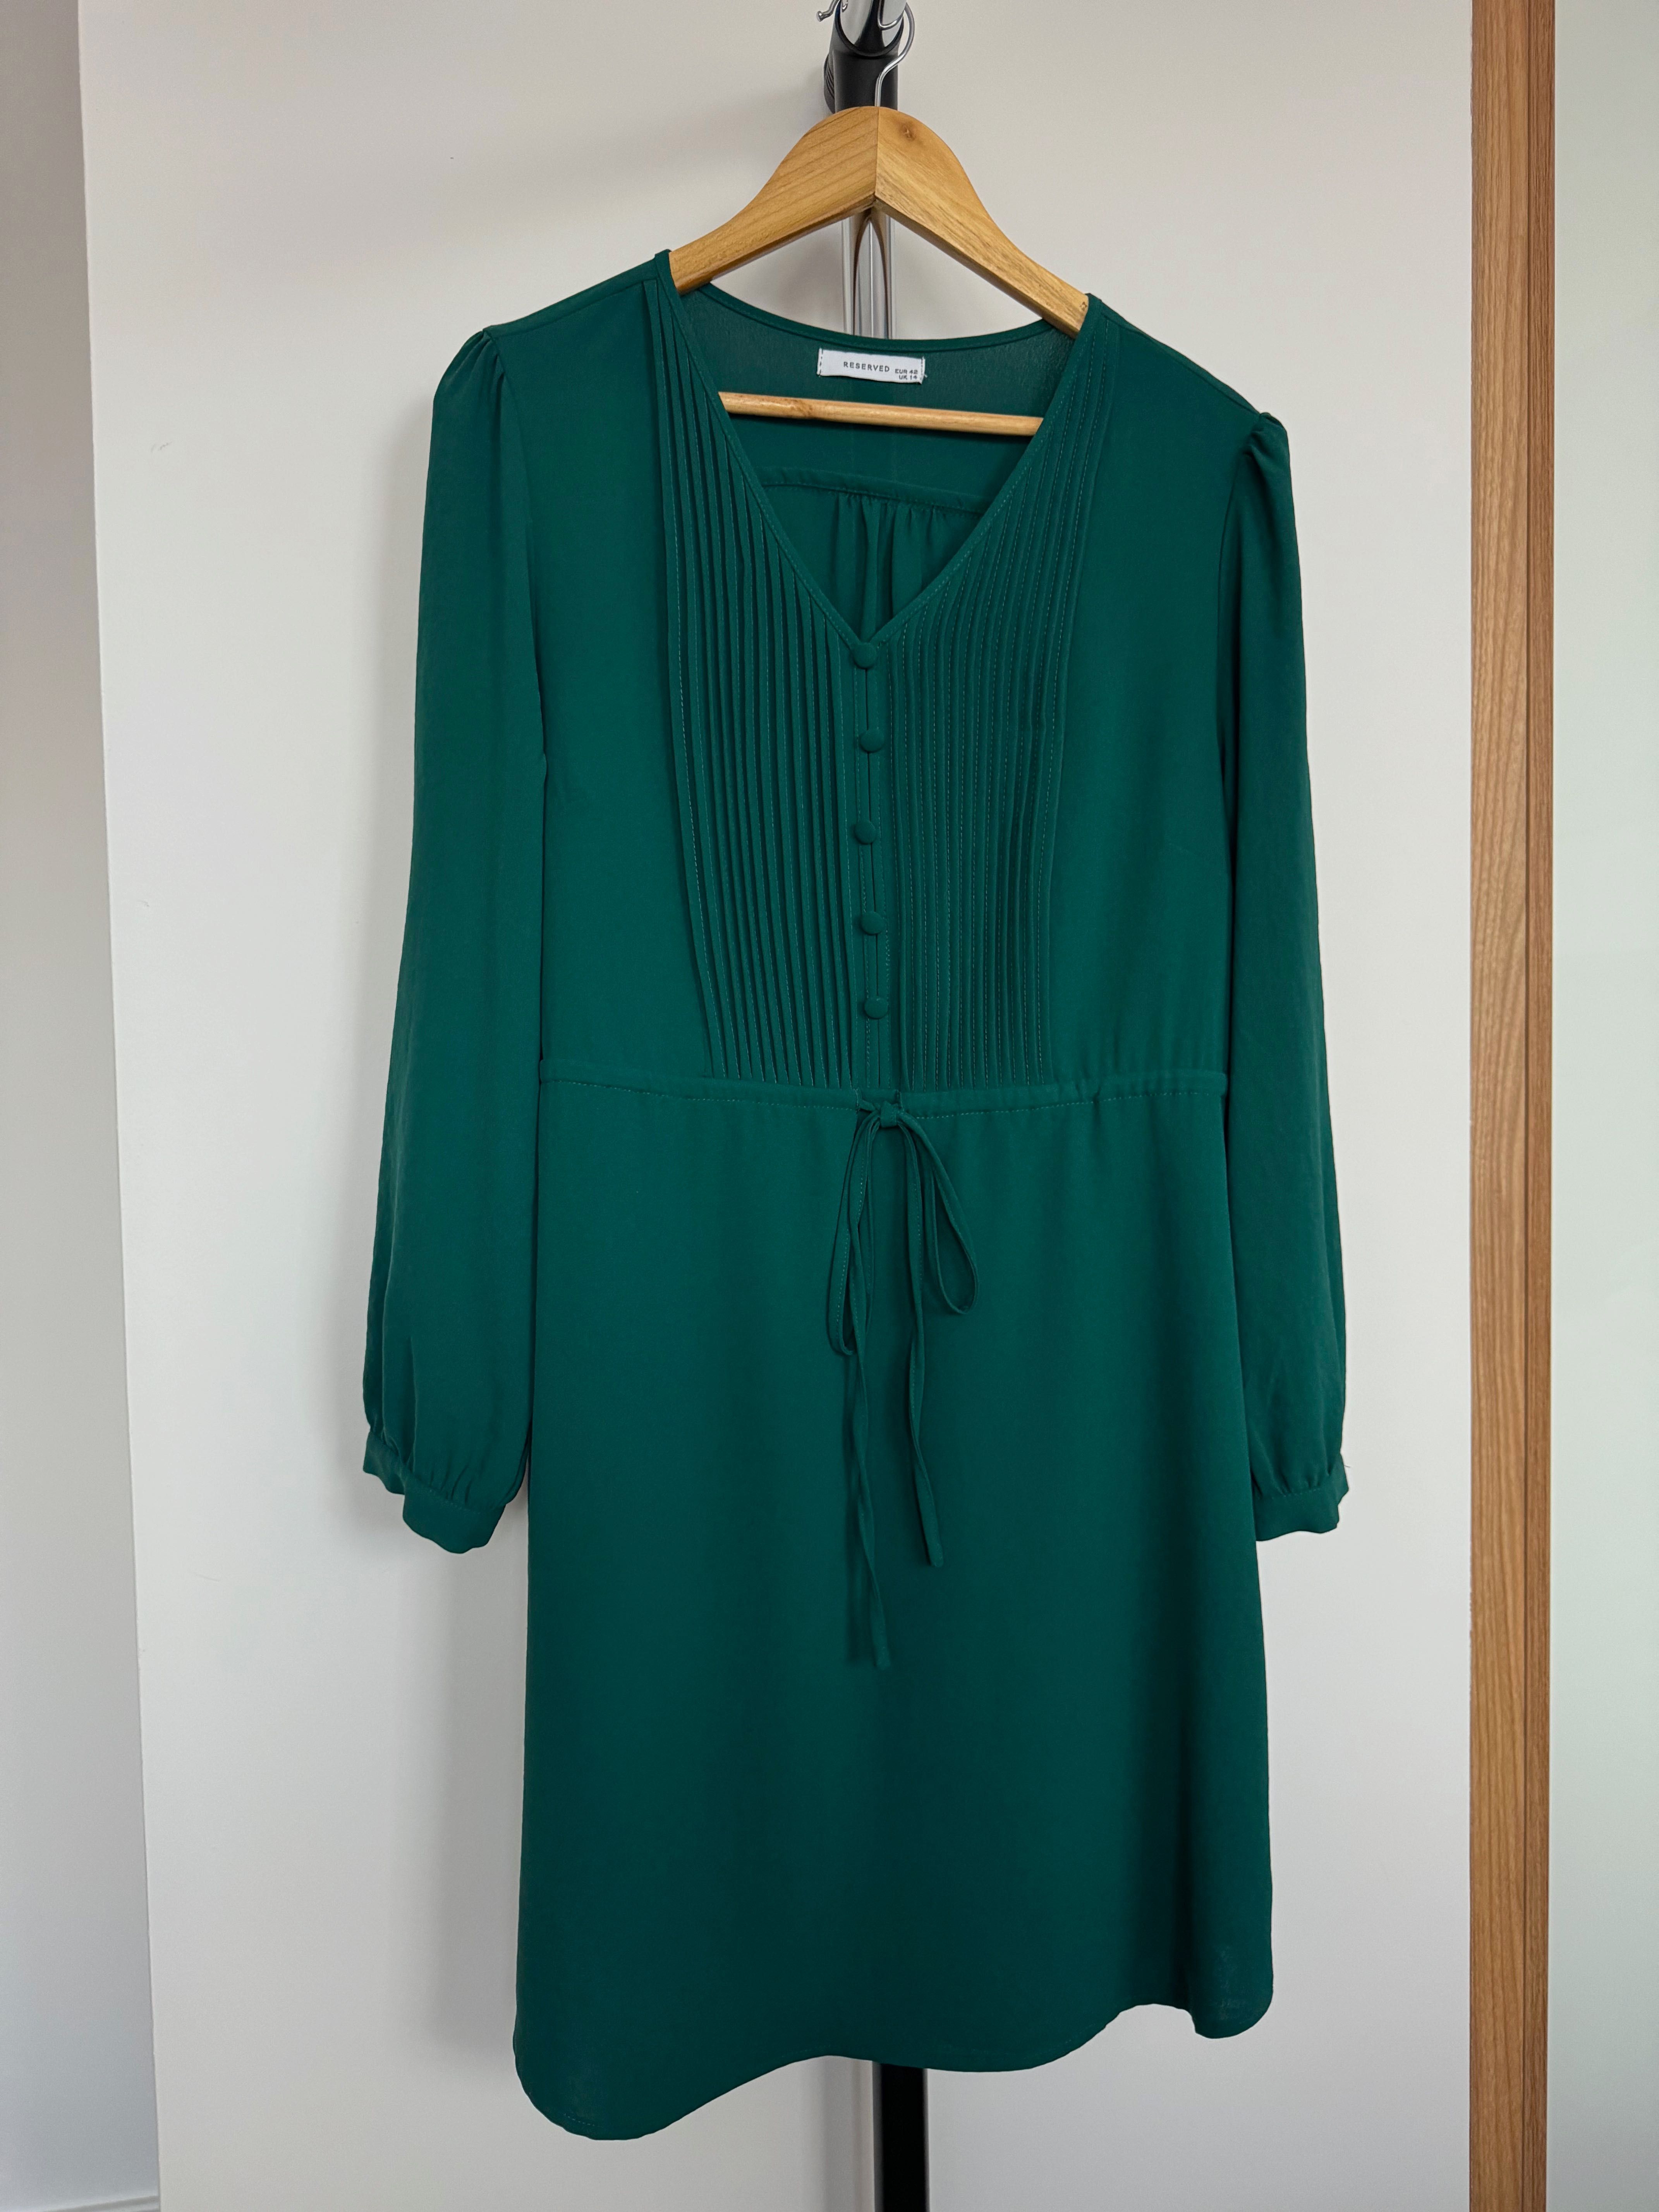 Sukienka Reserved, rozmiar 42, butelkowa zieleń